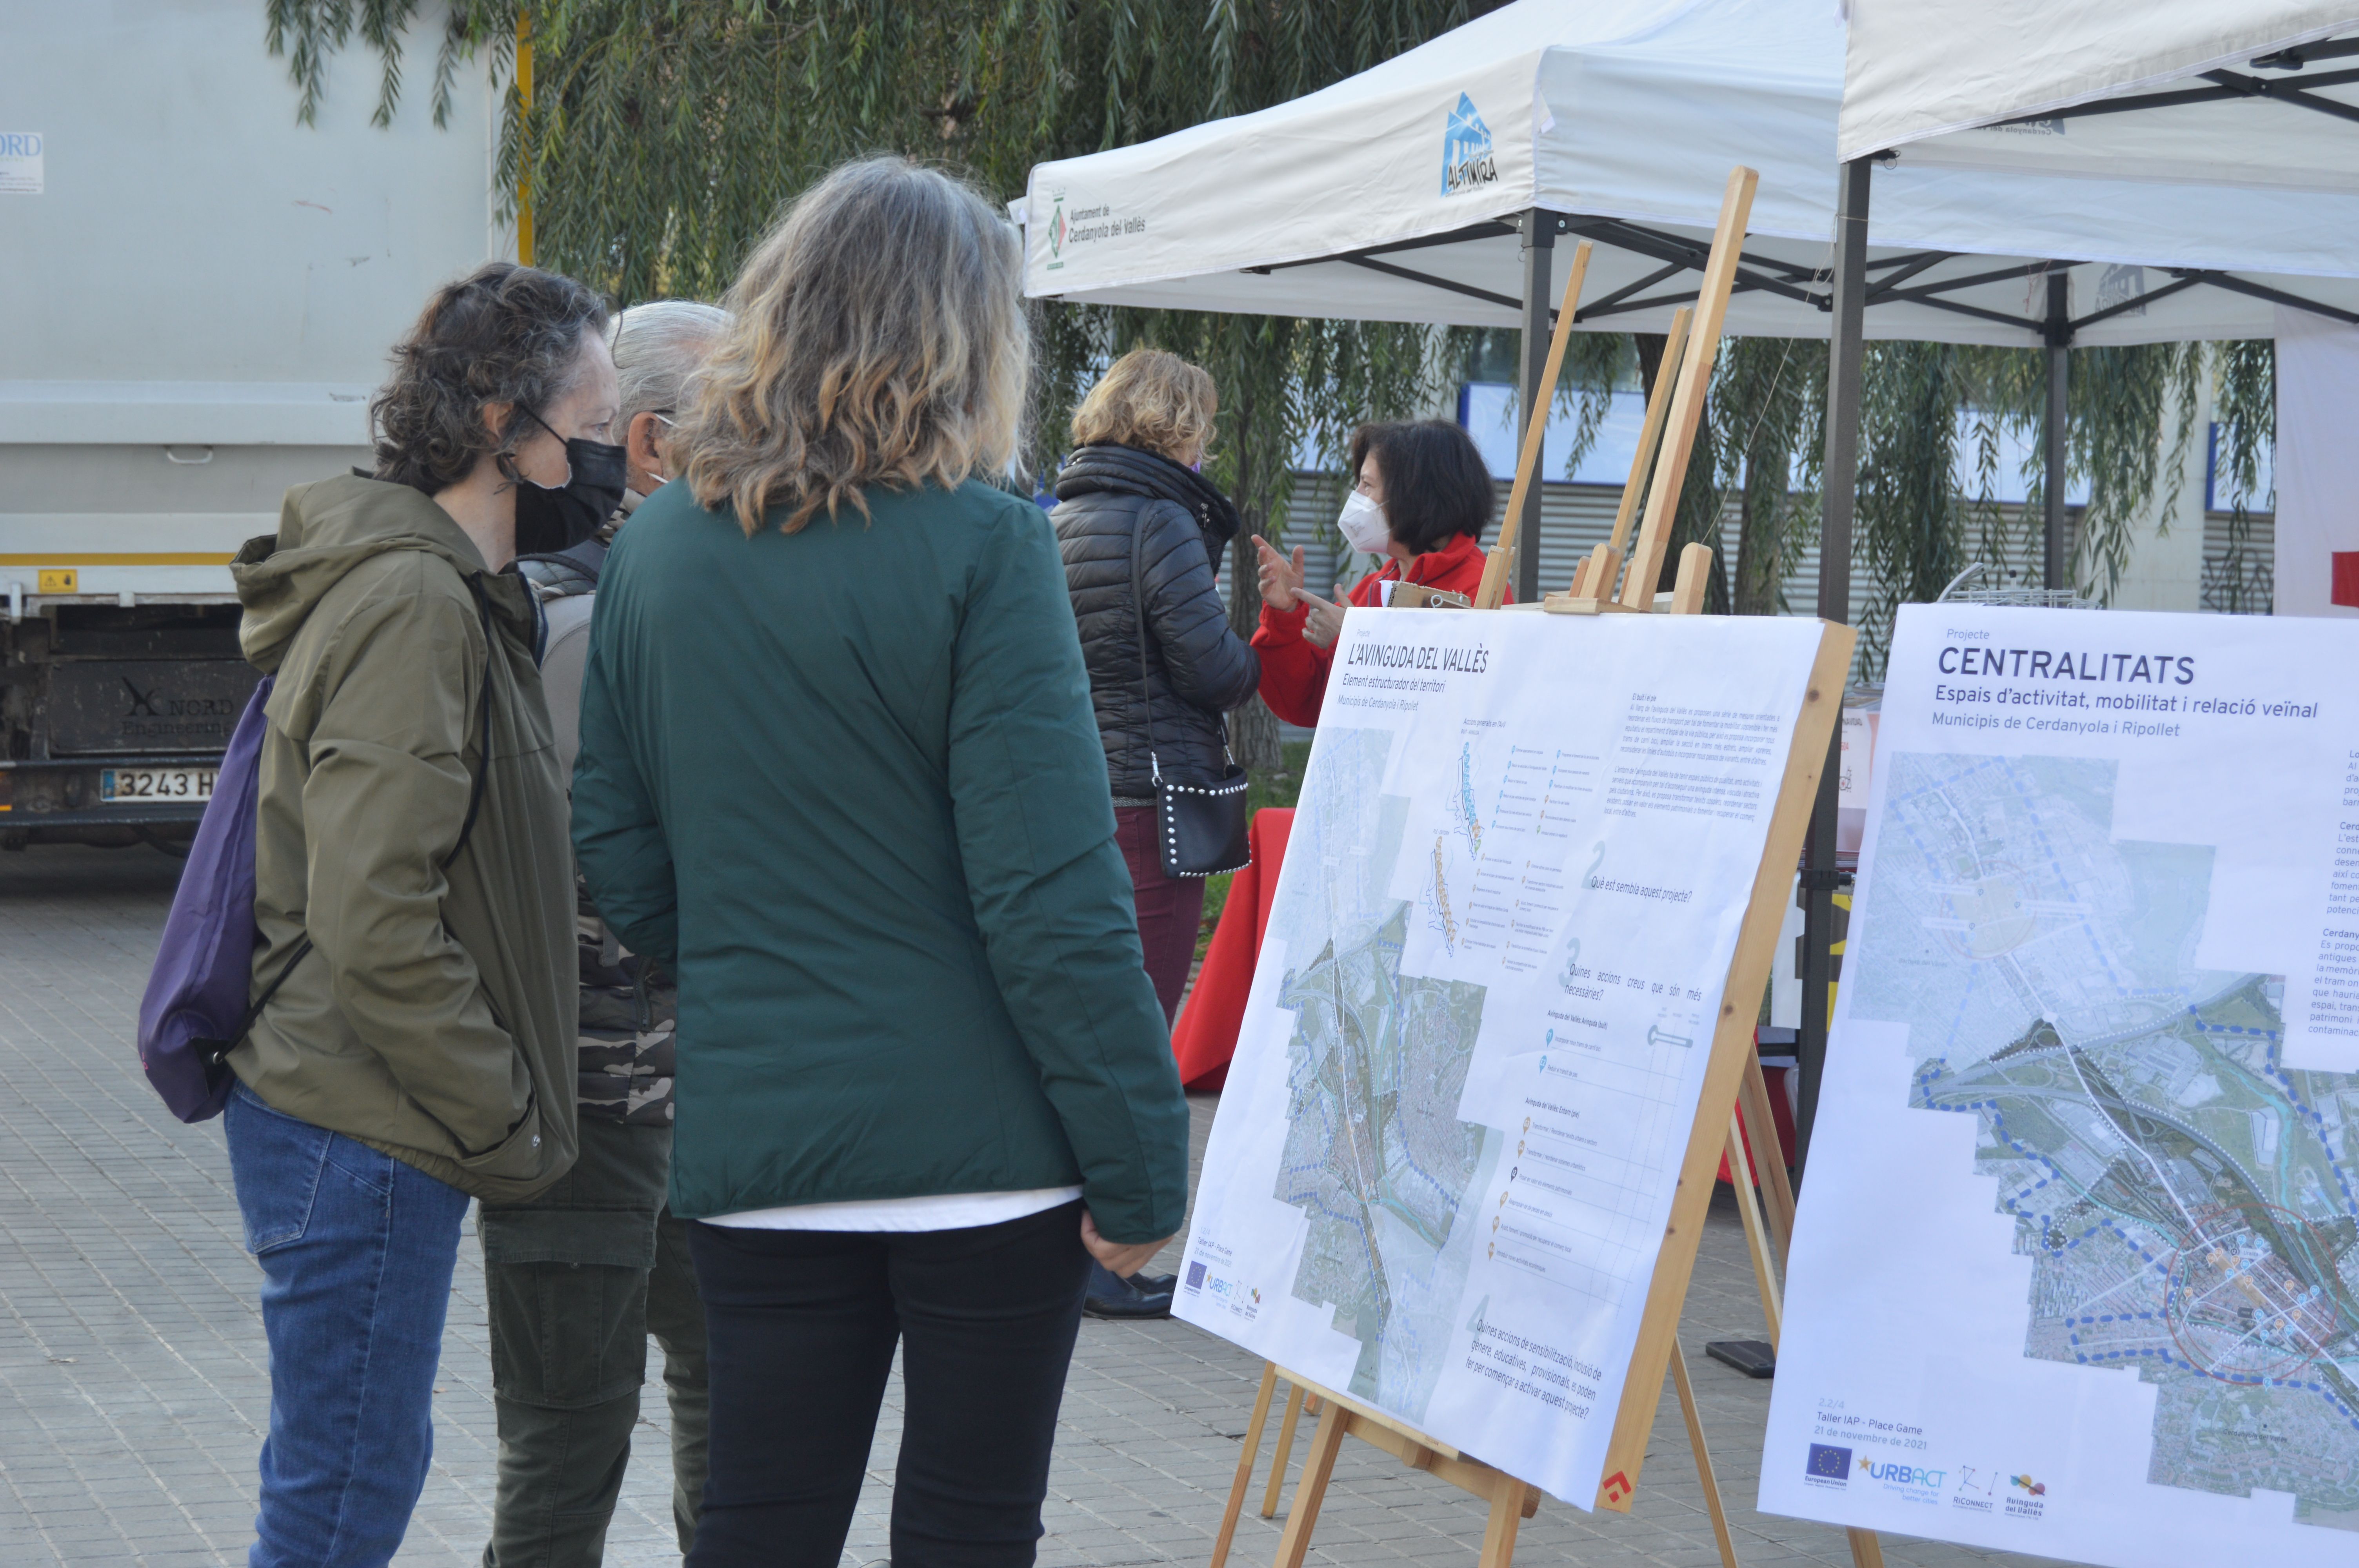 S'ha disposat un espai informatiu sobre la proposta de l'Avinguda del Vallès a la festa de la N-150. FOTO: Nora Muñoz Otero